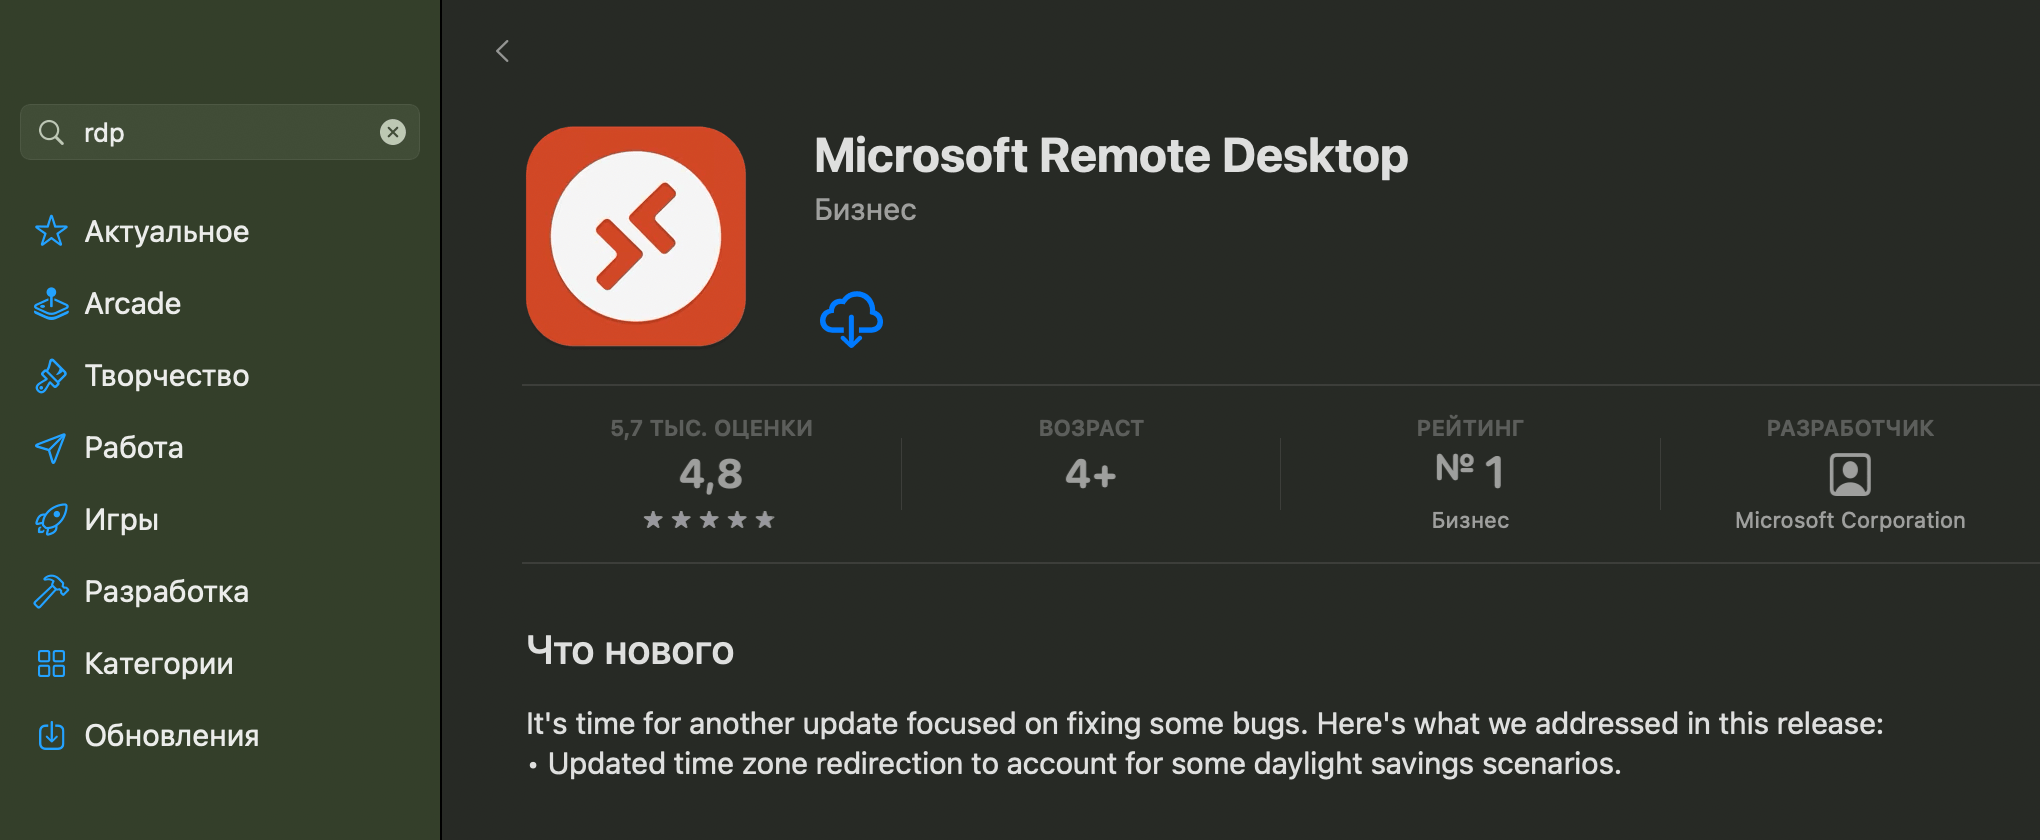 Приложение «Microsoft Remote Desktop» в App Store